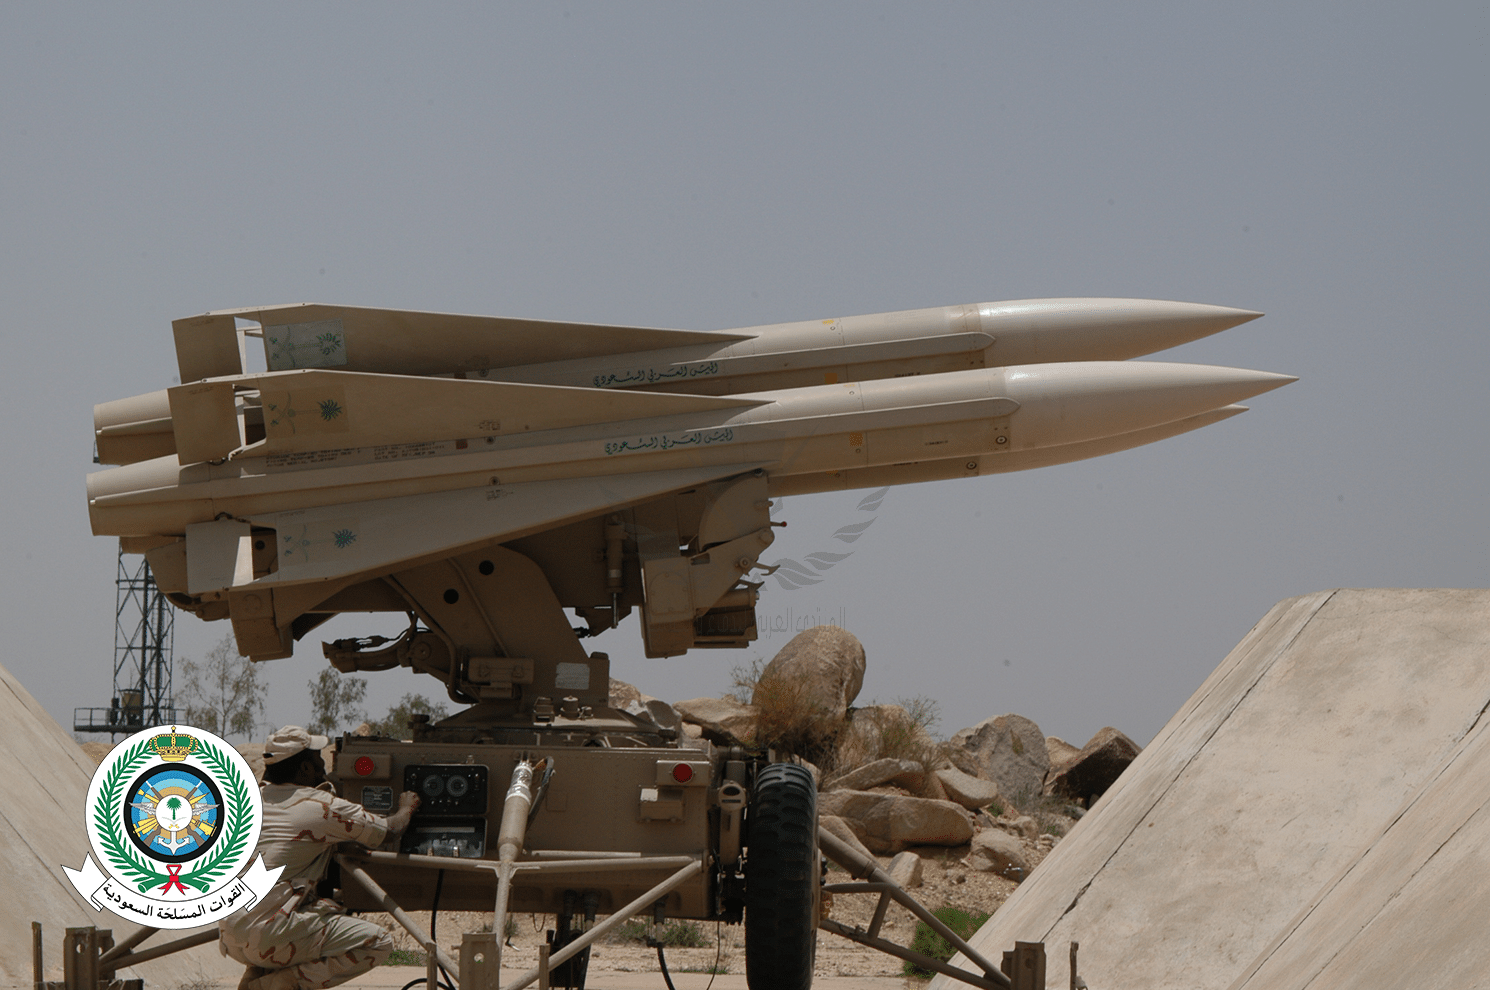 ما هي القدرات التي يمتلكها الدفاع الجوي السعودي للتصدي للمسيرات والصواريخ ؟